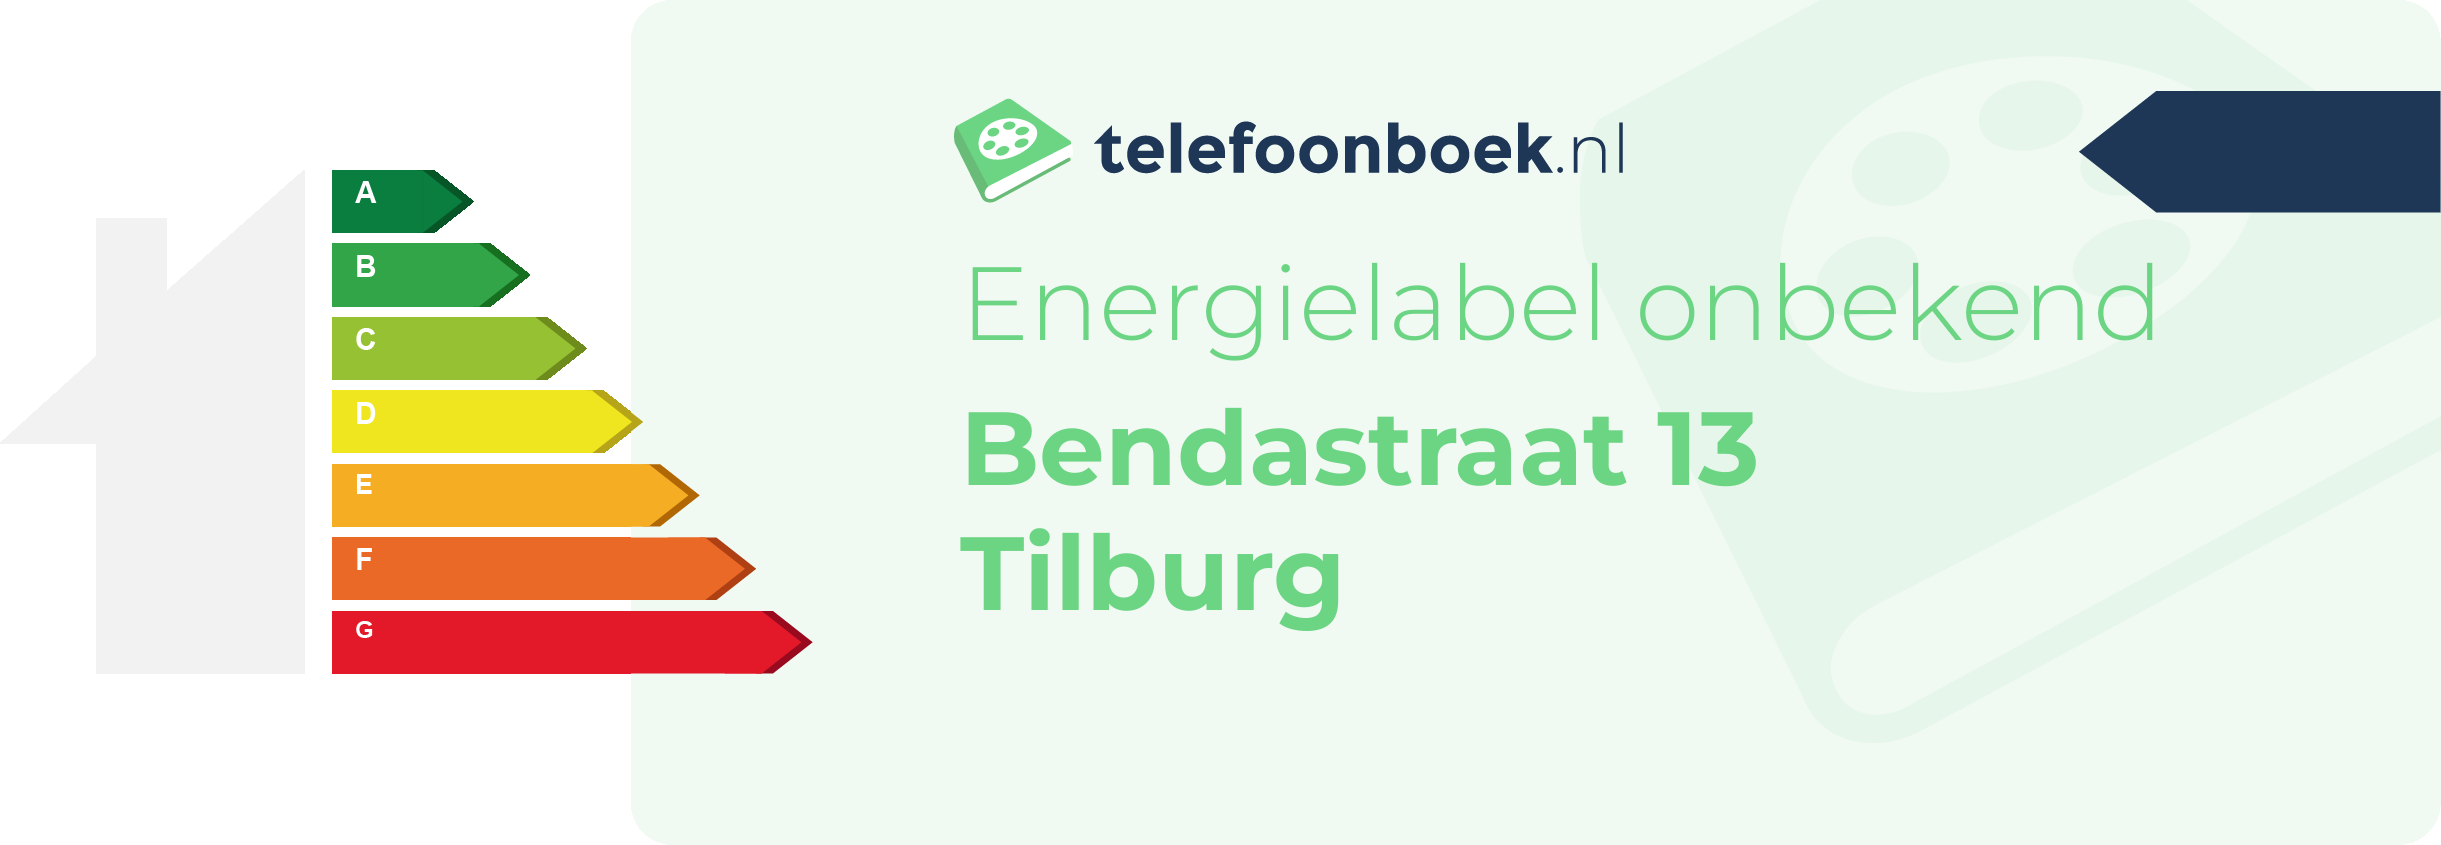 Energielabel Bendastraat 13 Tilburg